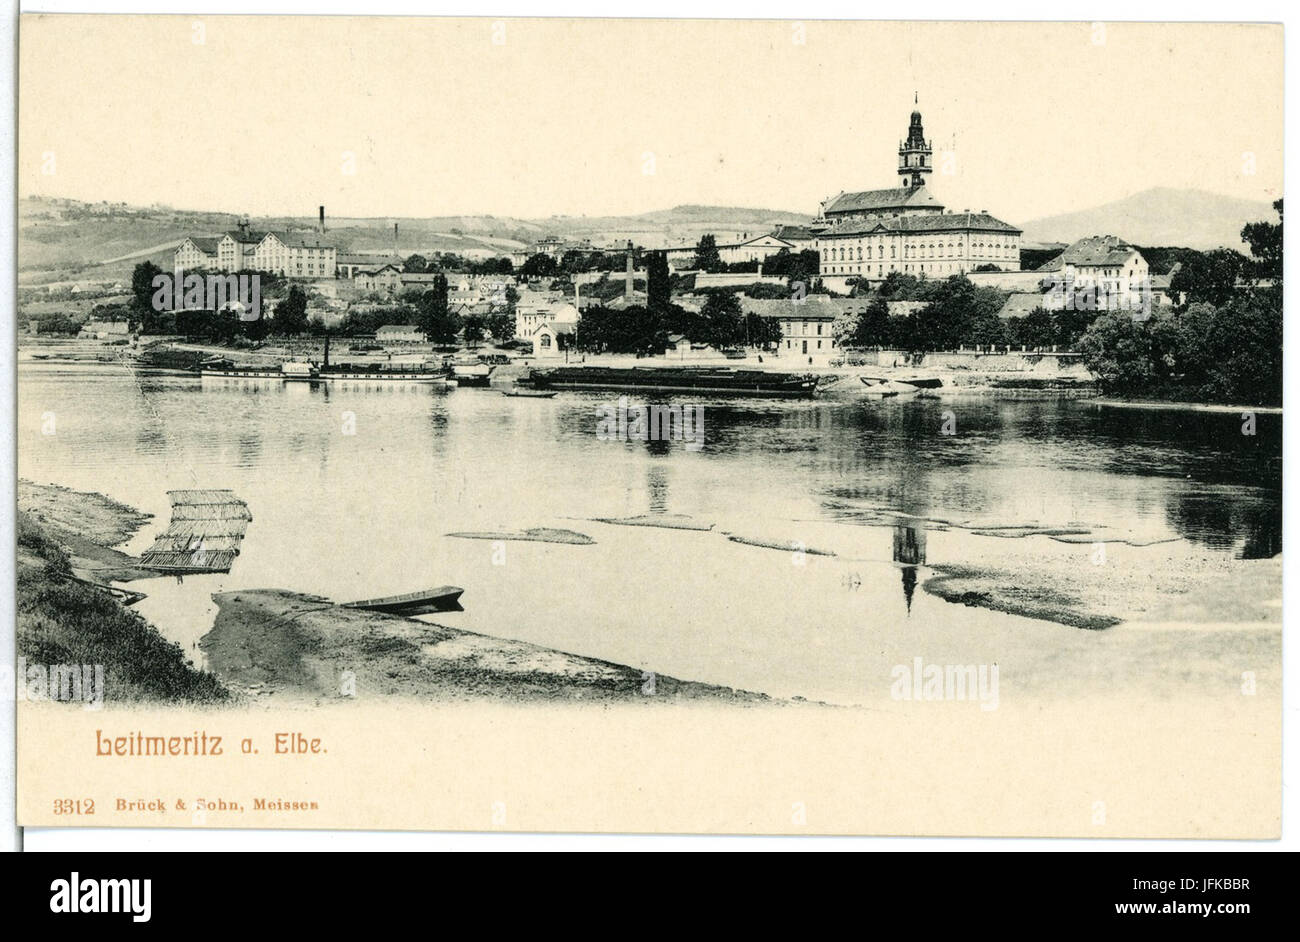 03312-Leitmeritz-1903-Blick über die Elbe zur Stadt-Brück & Sohn Kunstverlag Stock Photo